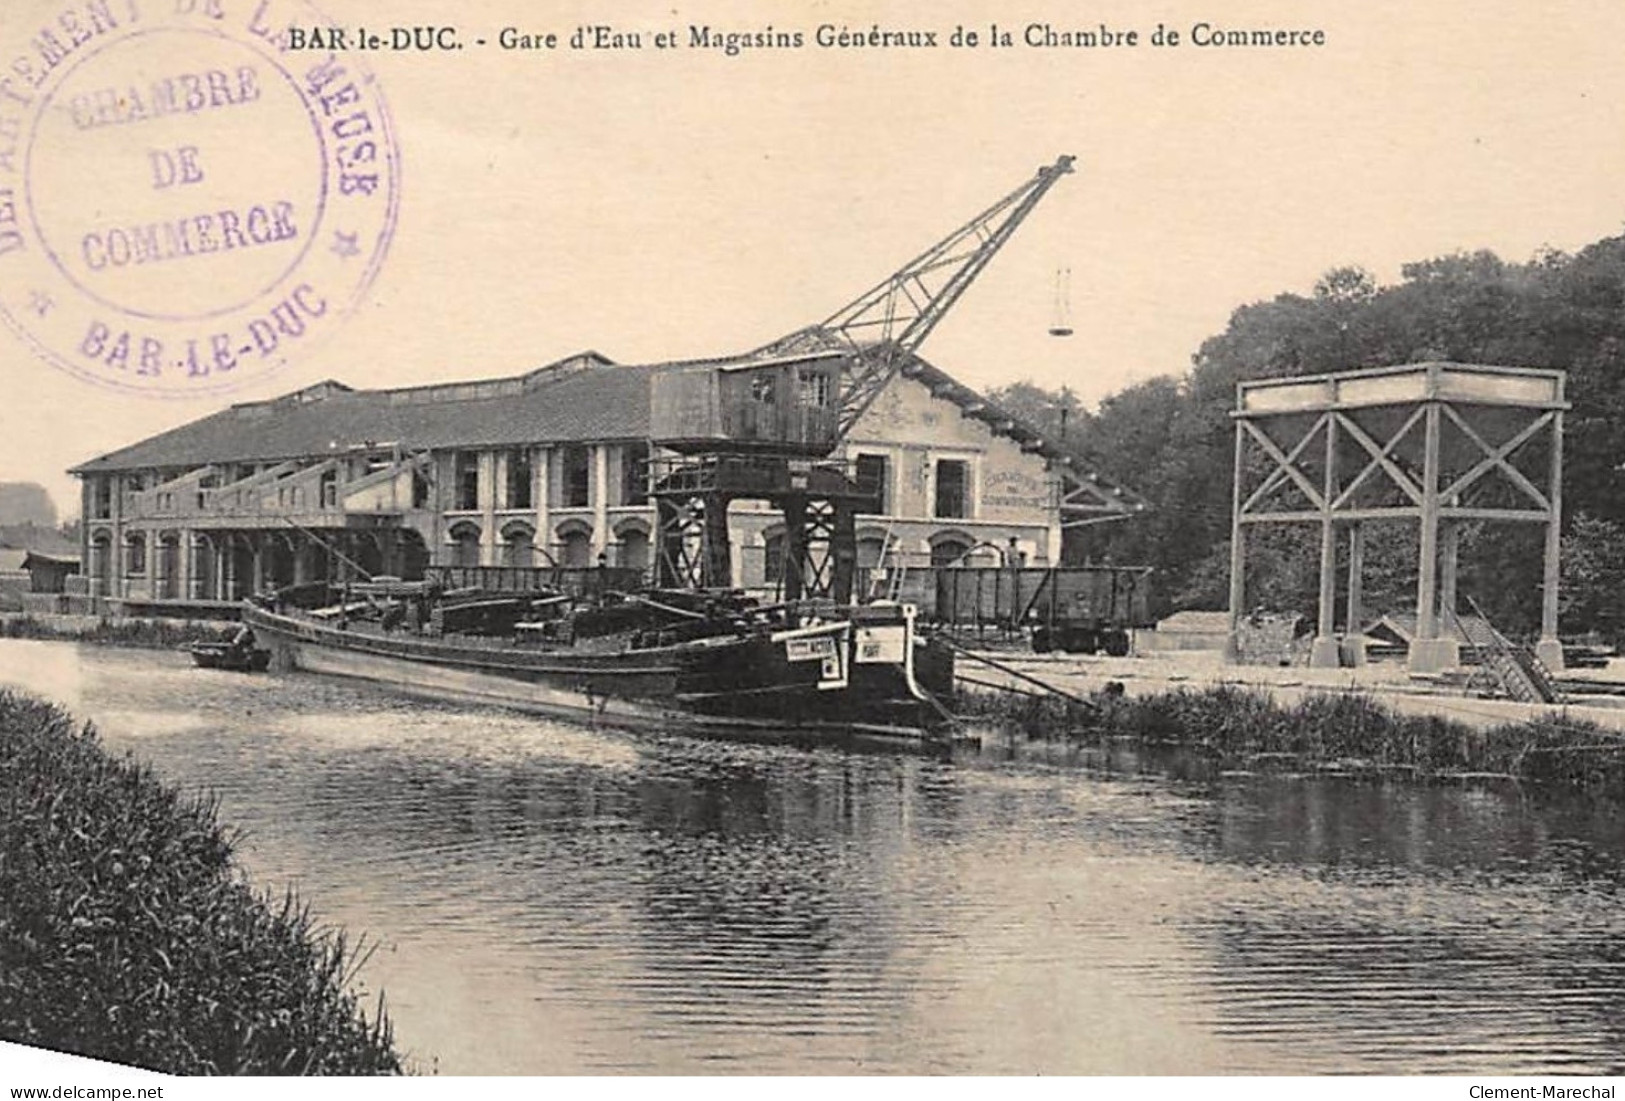 BAR-le-DUC : Gare D'eau Et Magasins Generaux De La Chambre De Commerce - Tres Bon Etat - Bar Le Duc